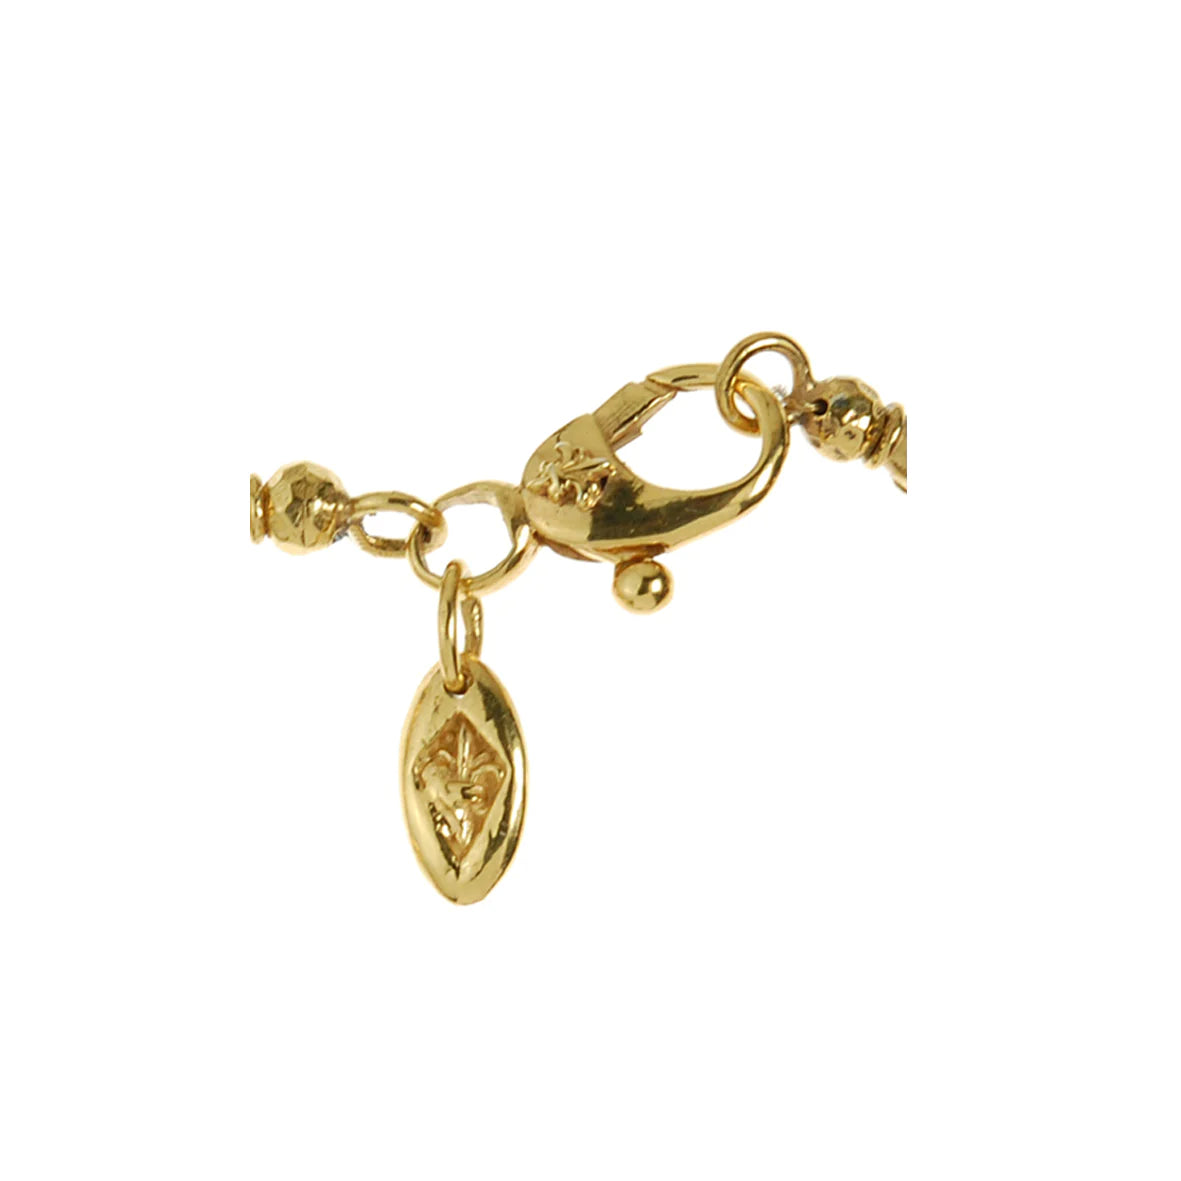 Vergoldeter Verschluss mit Lilien-Zierelementen des Elf Craft Armbands